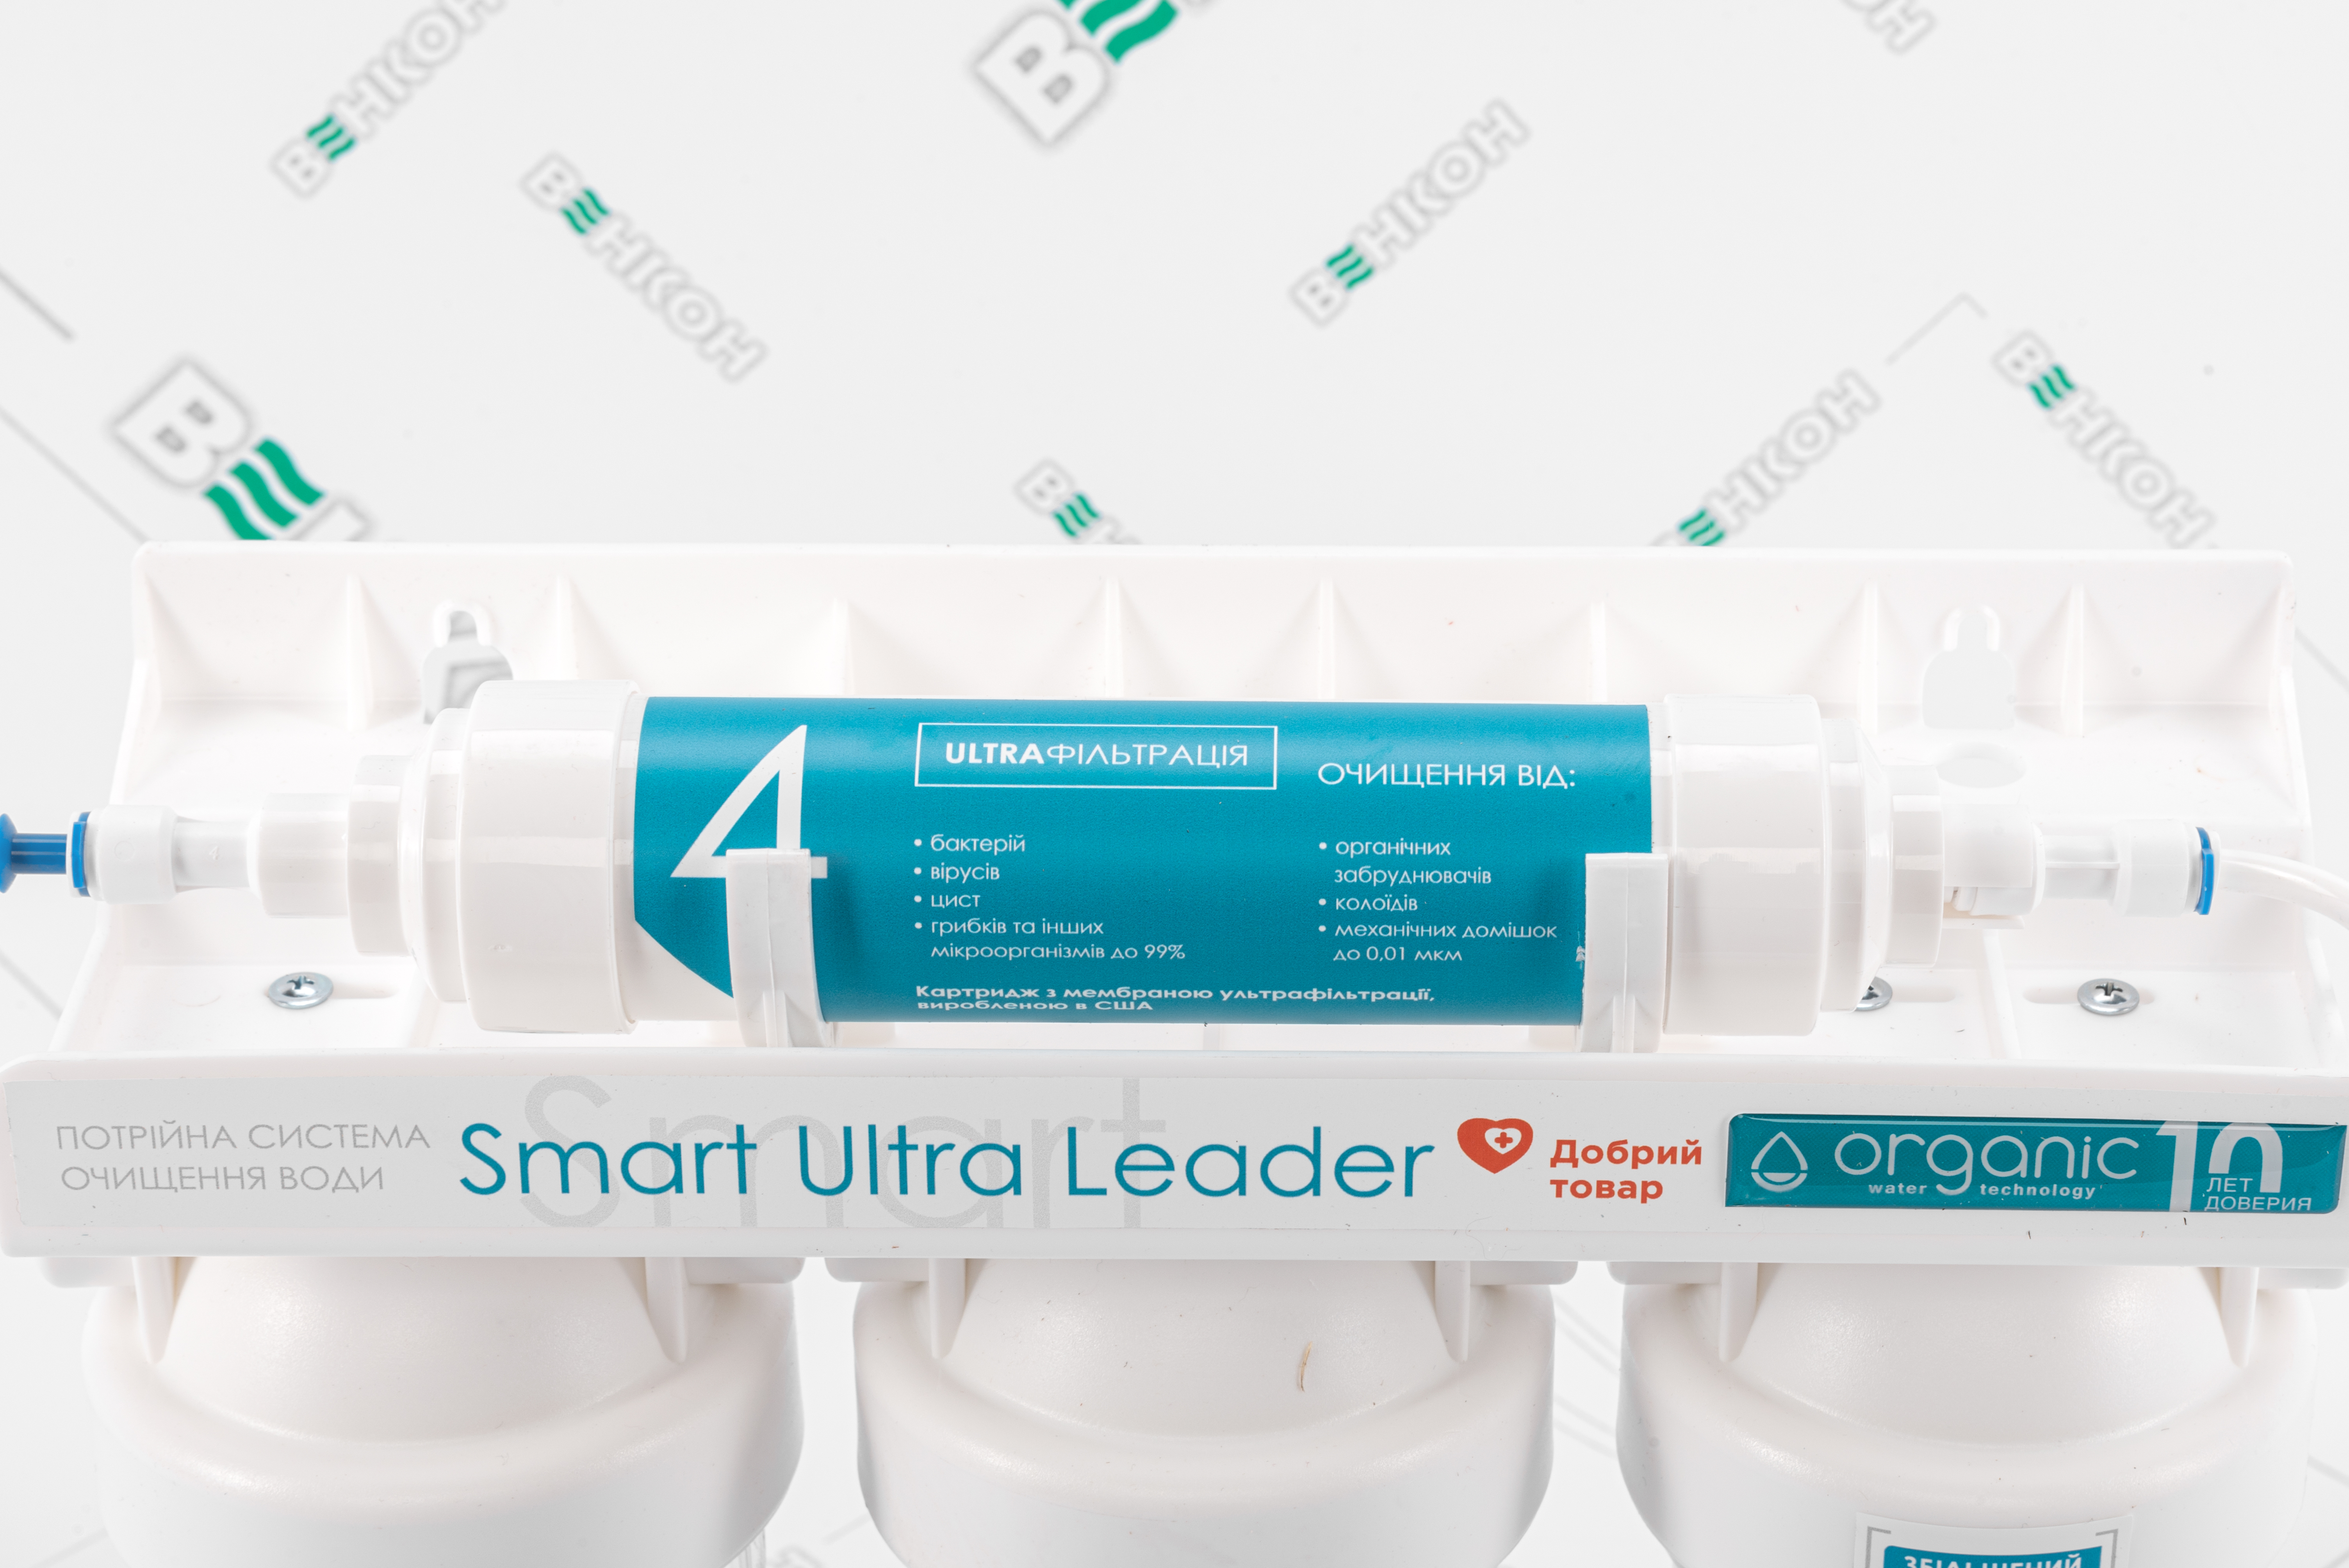 продаємо Organic Smart Ultra Leader в Україні - фото 4